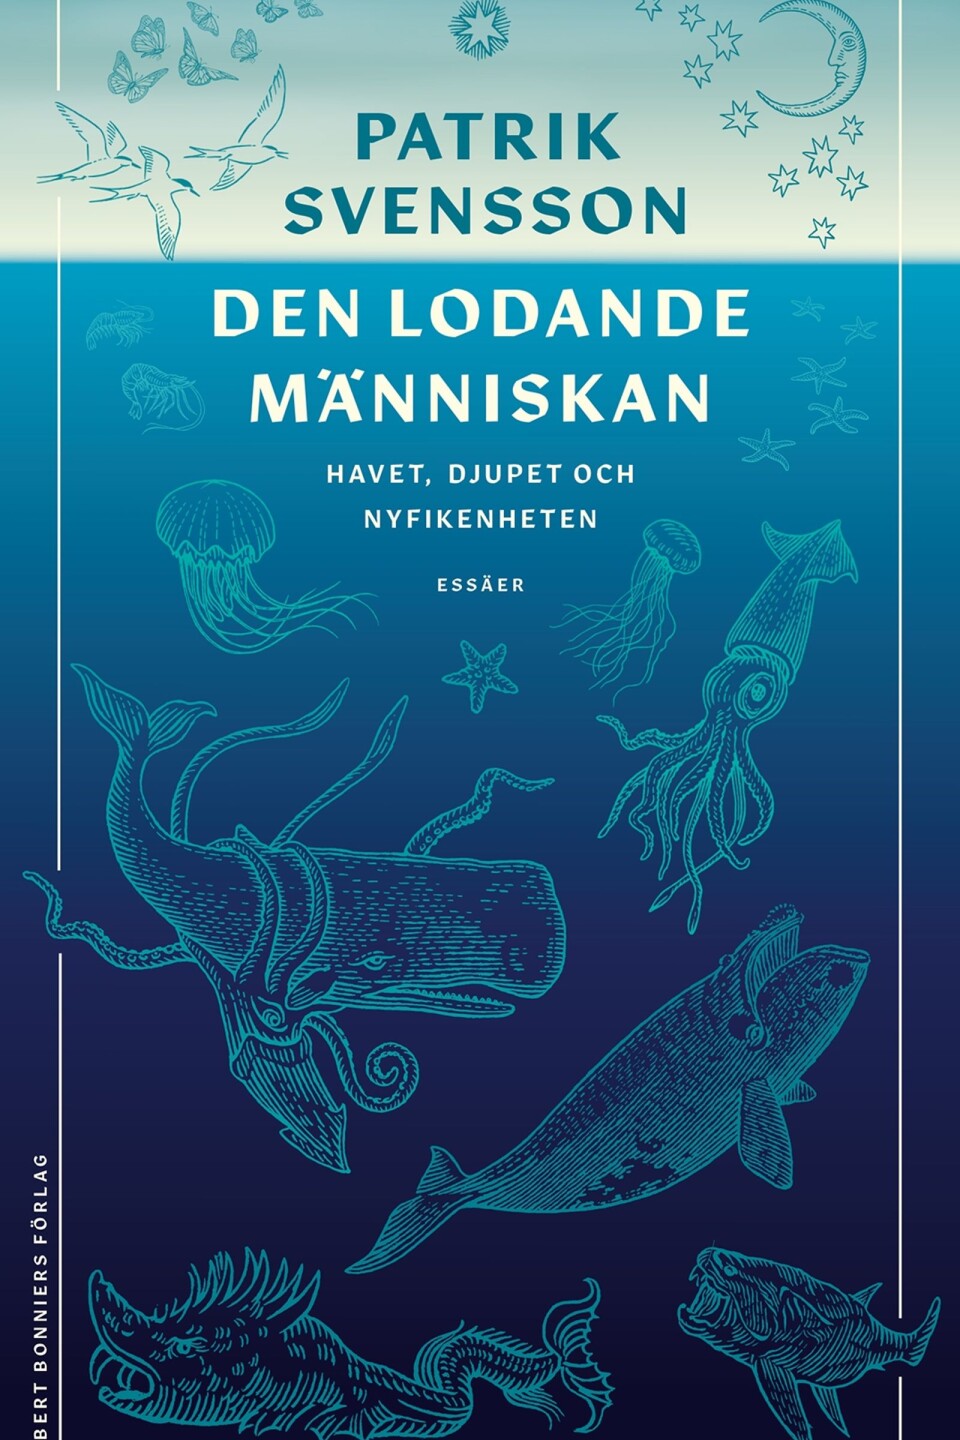 Patrik Svensson är aktuell med sin nya bok, om livet havet.